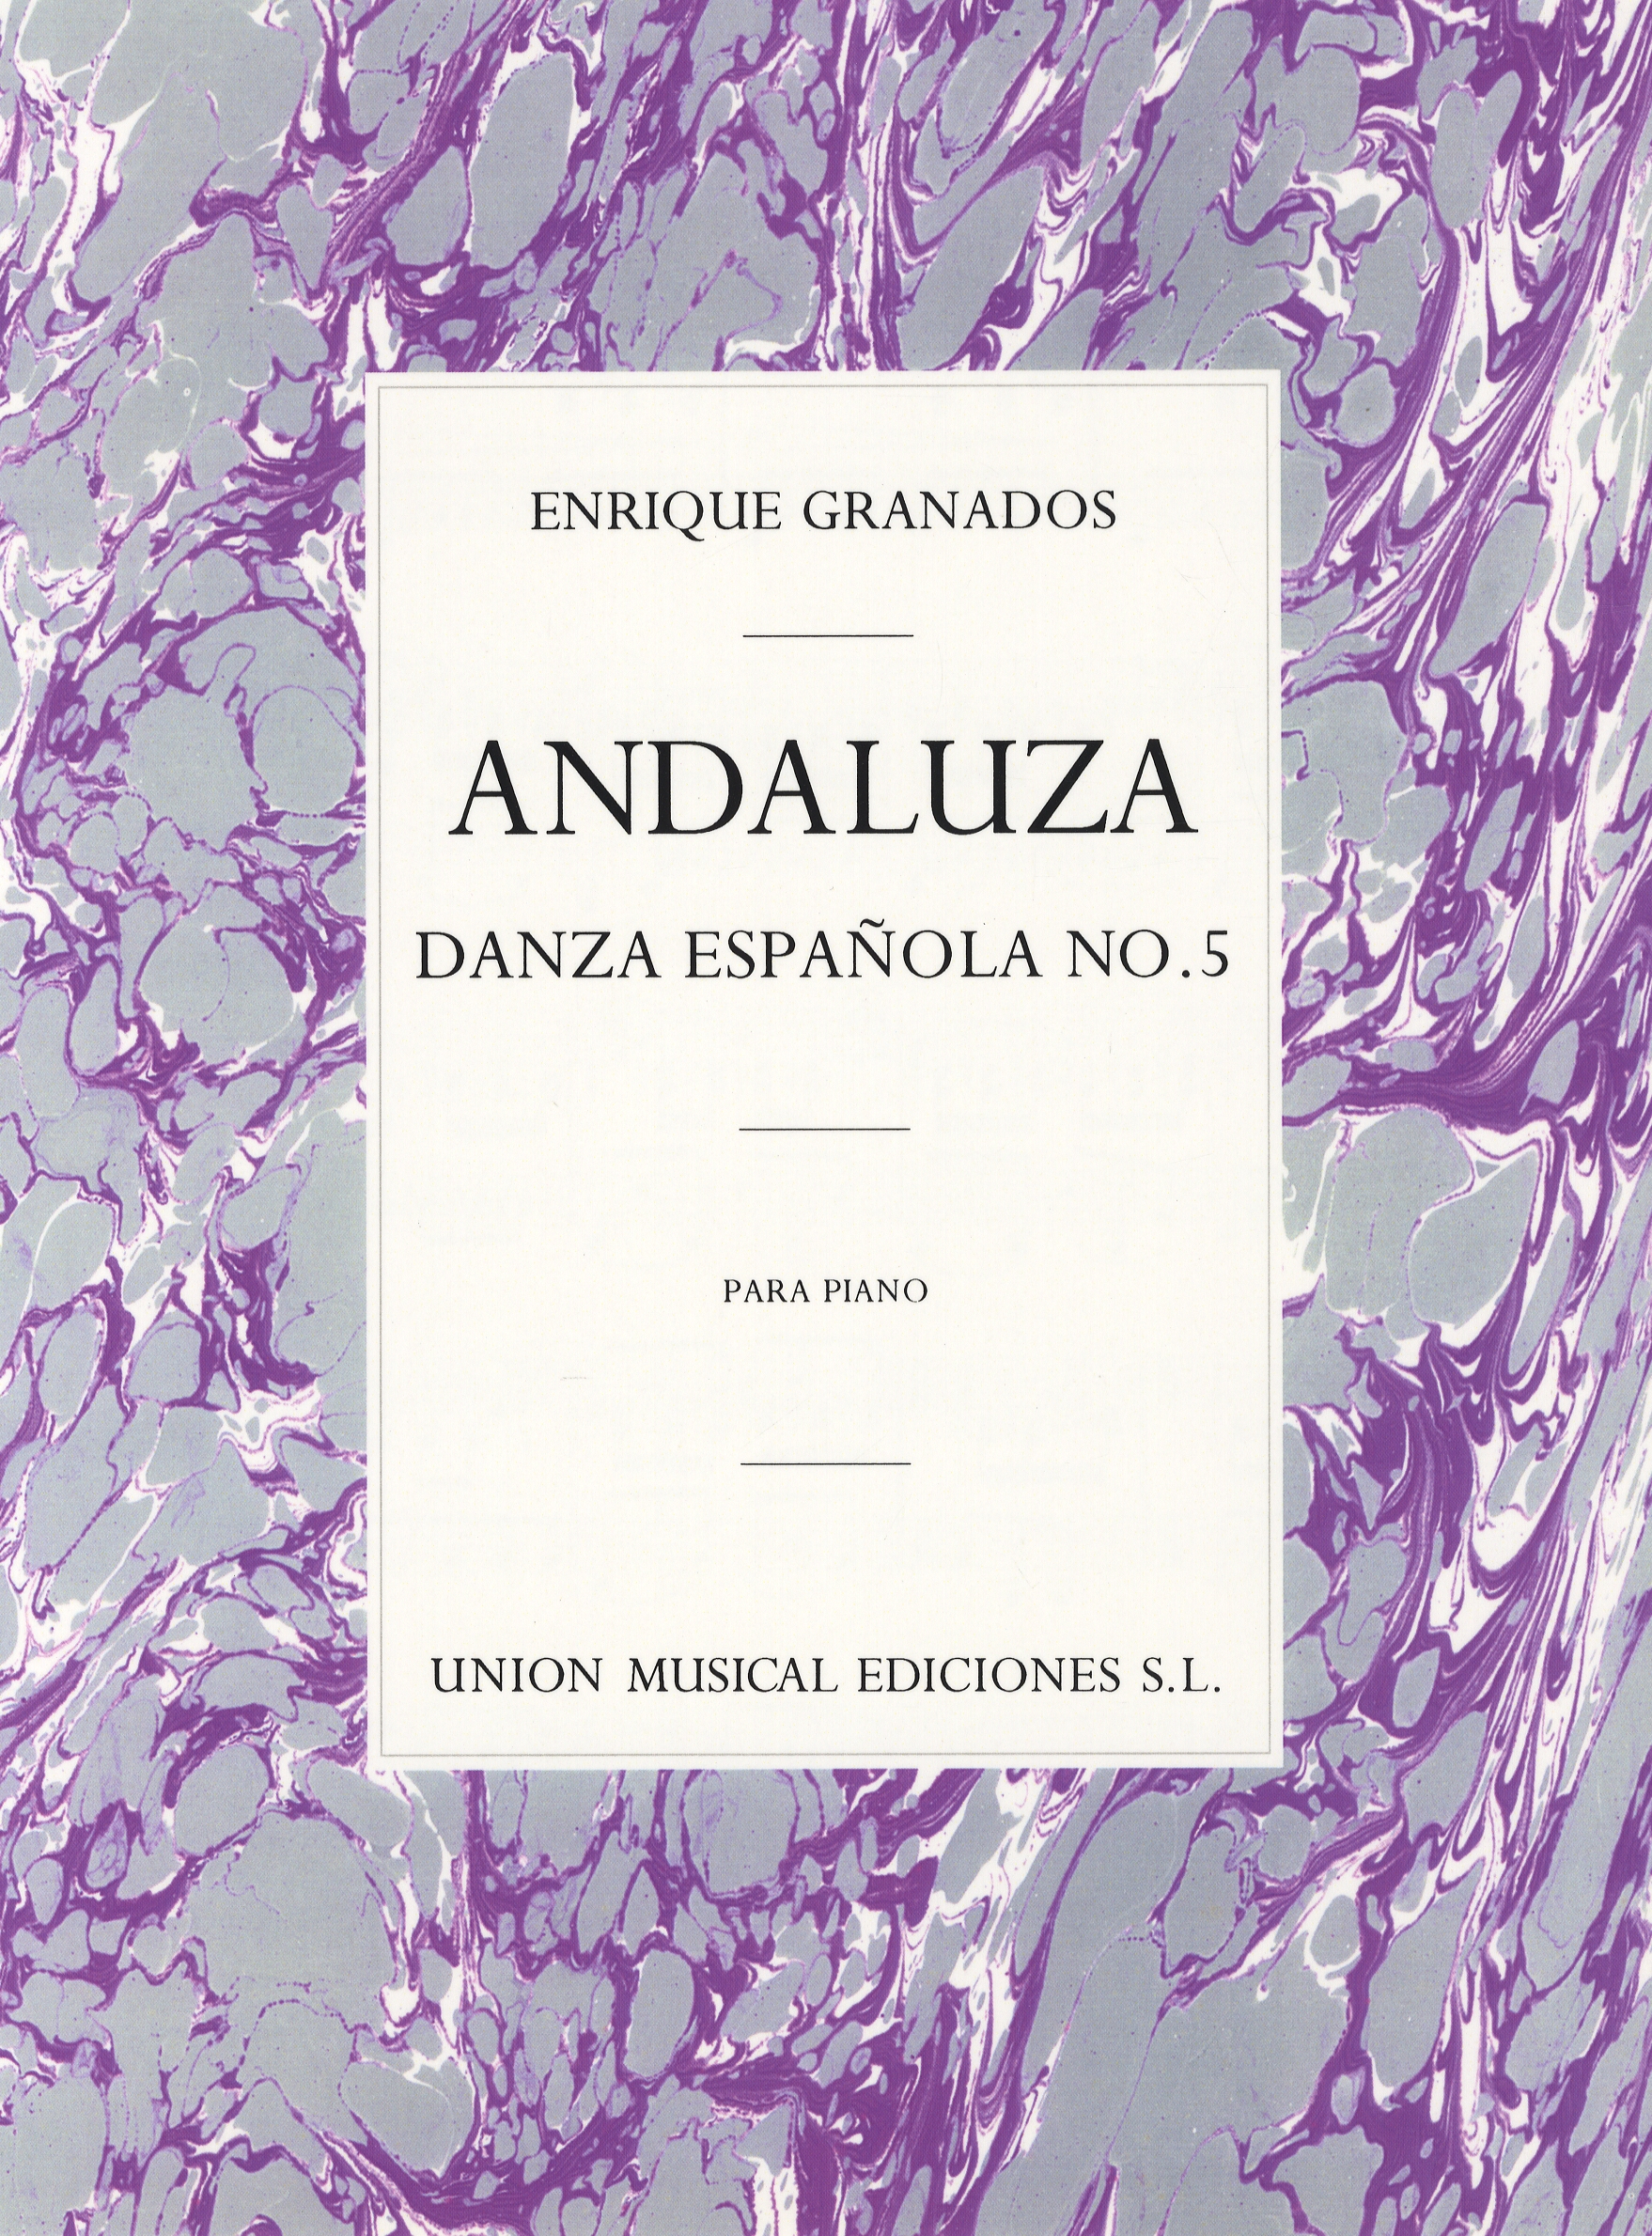 Enrique Granados: ANDALUZA DANZA ESPANOLA NO.5: Piano: Instrumental Album